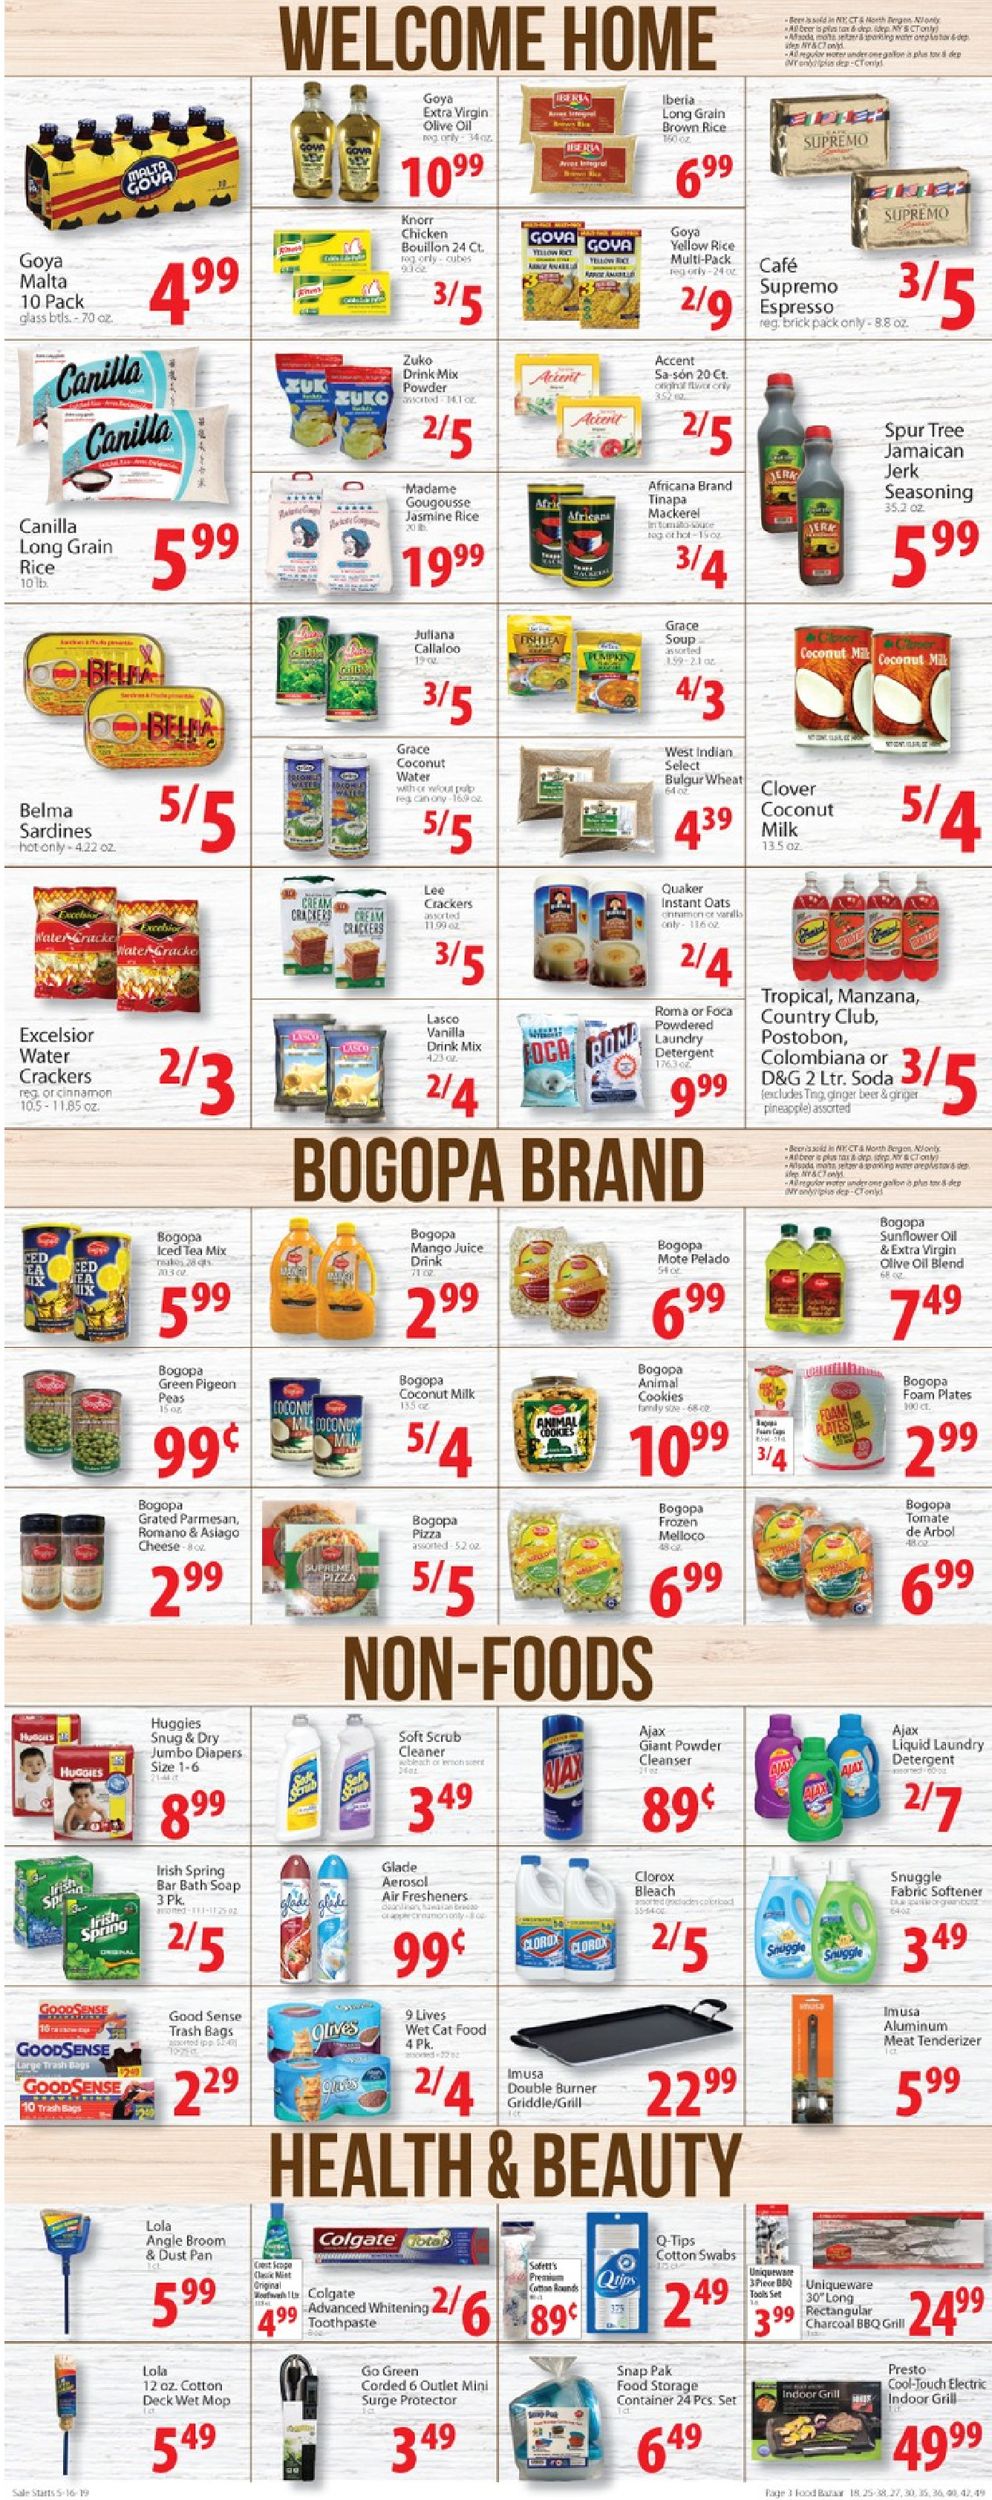 Food Bazaar Weekly Ad Circular - valid 05/16-05/22/2019 (Page 3)